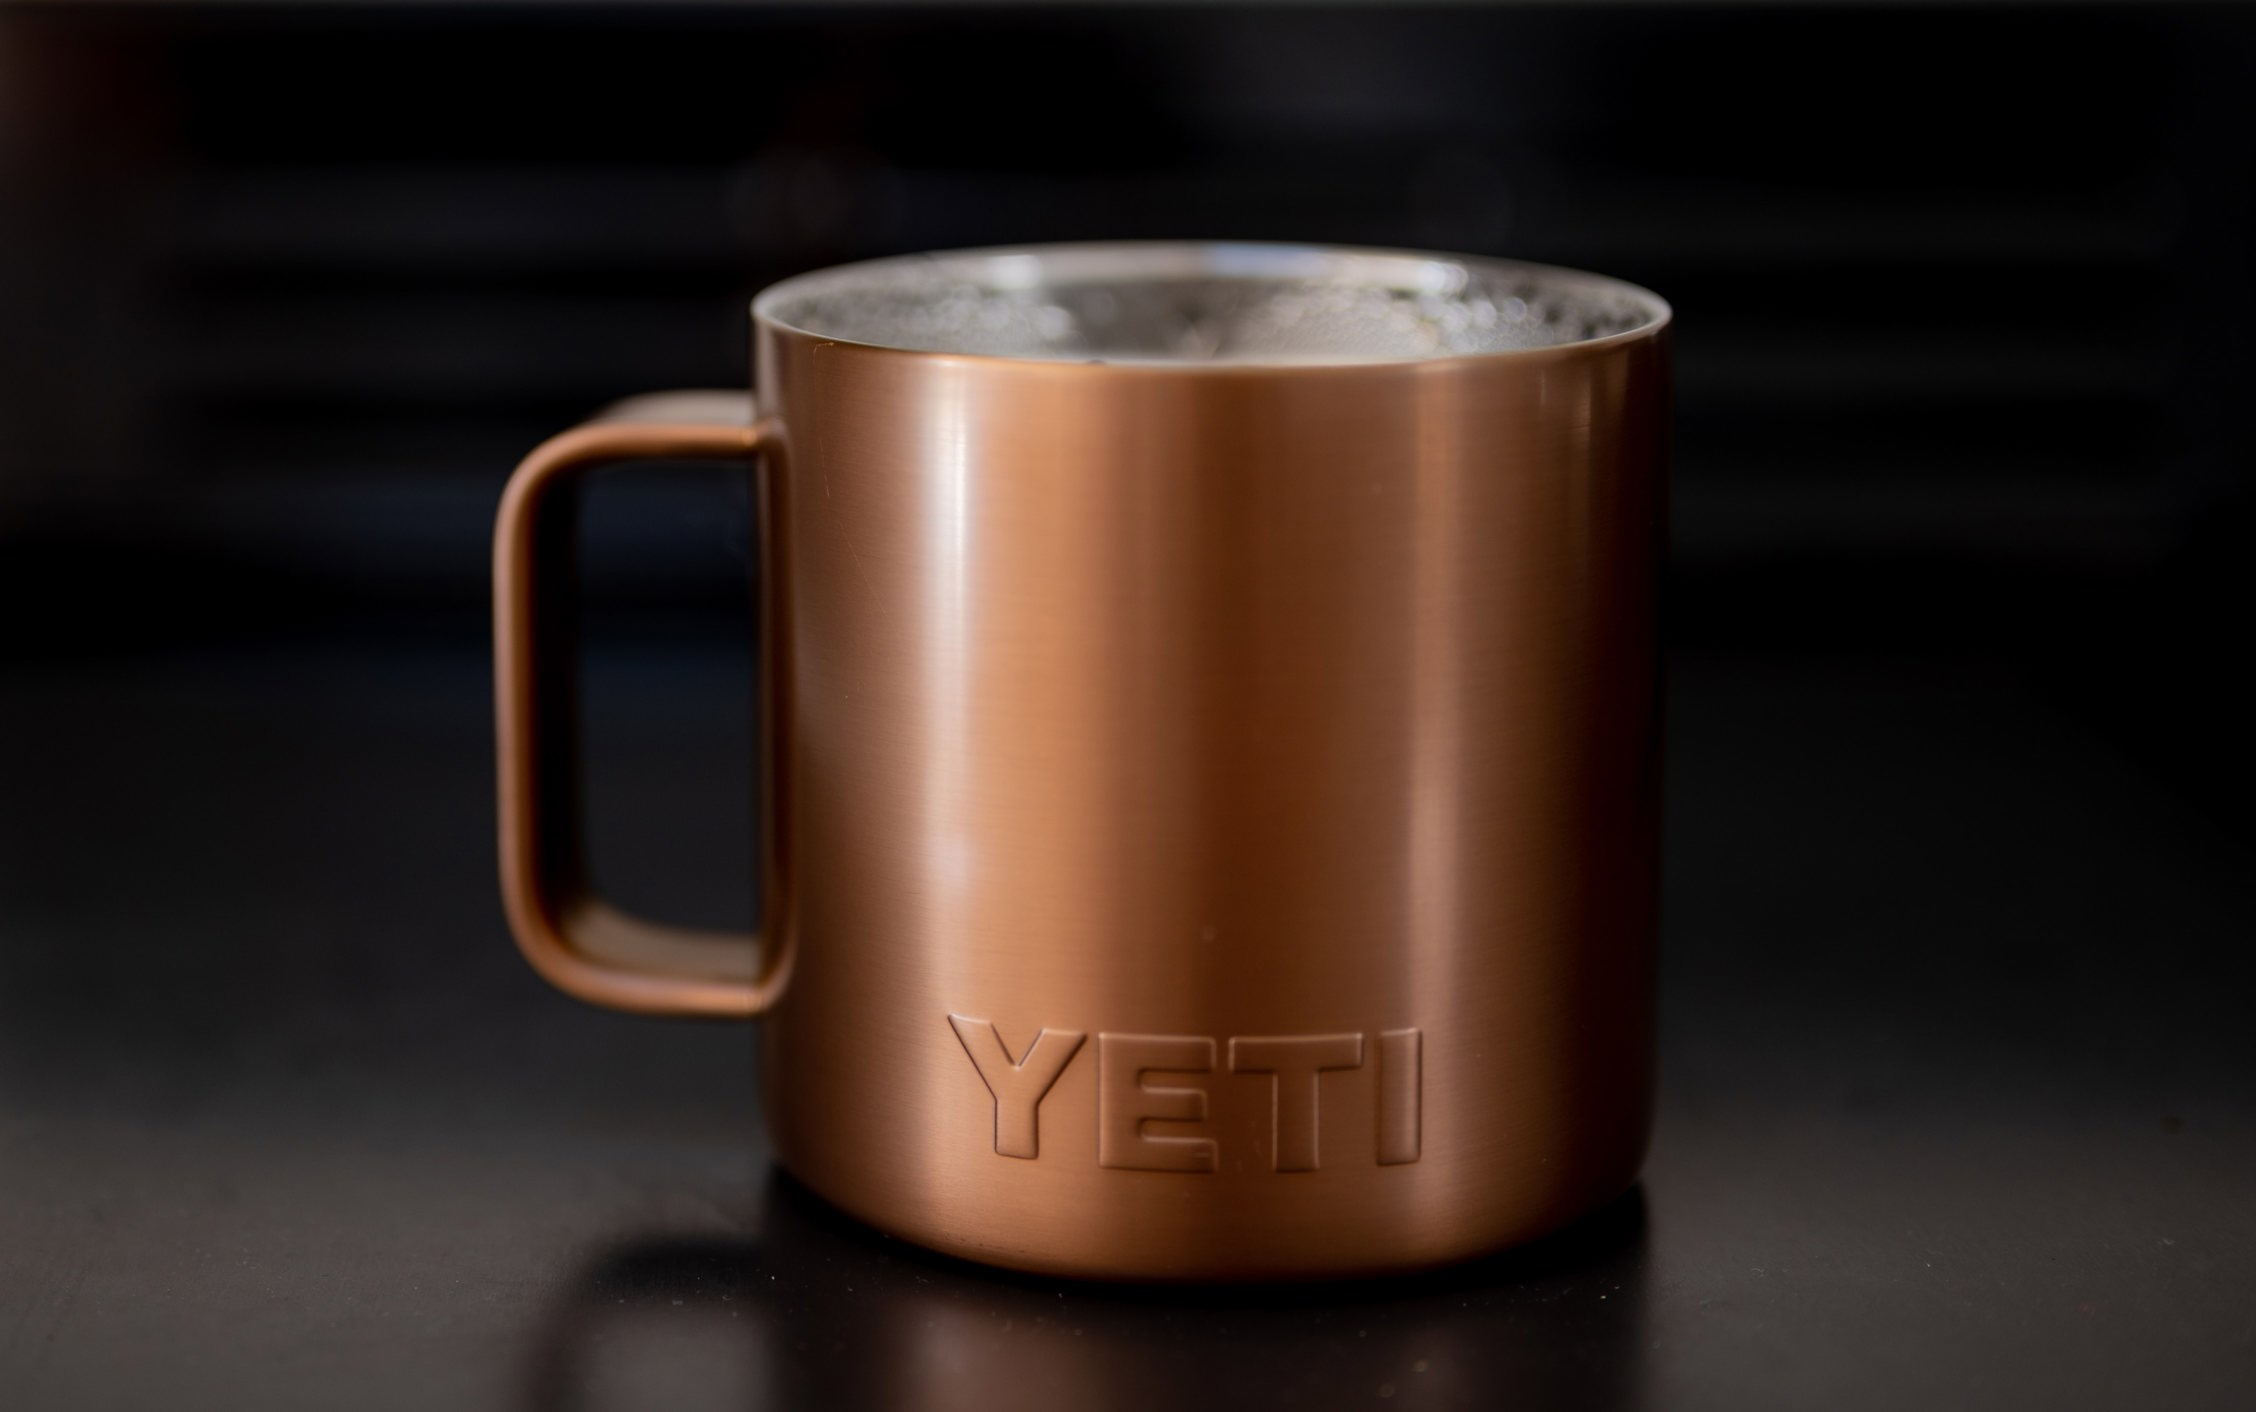 Yeti Holdings YETI stock news and analysis